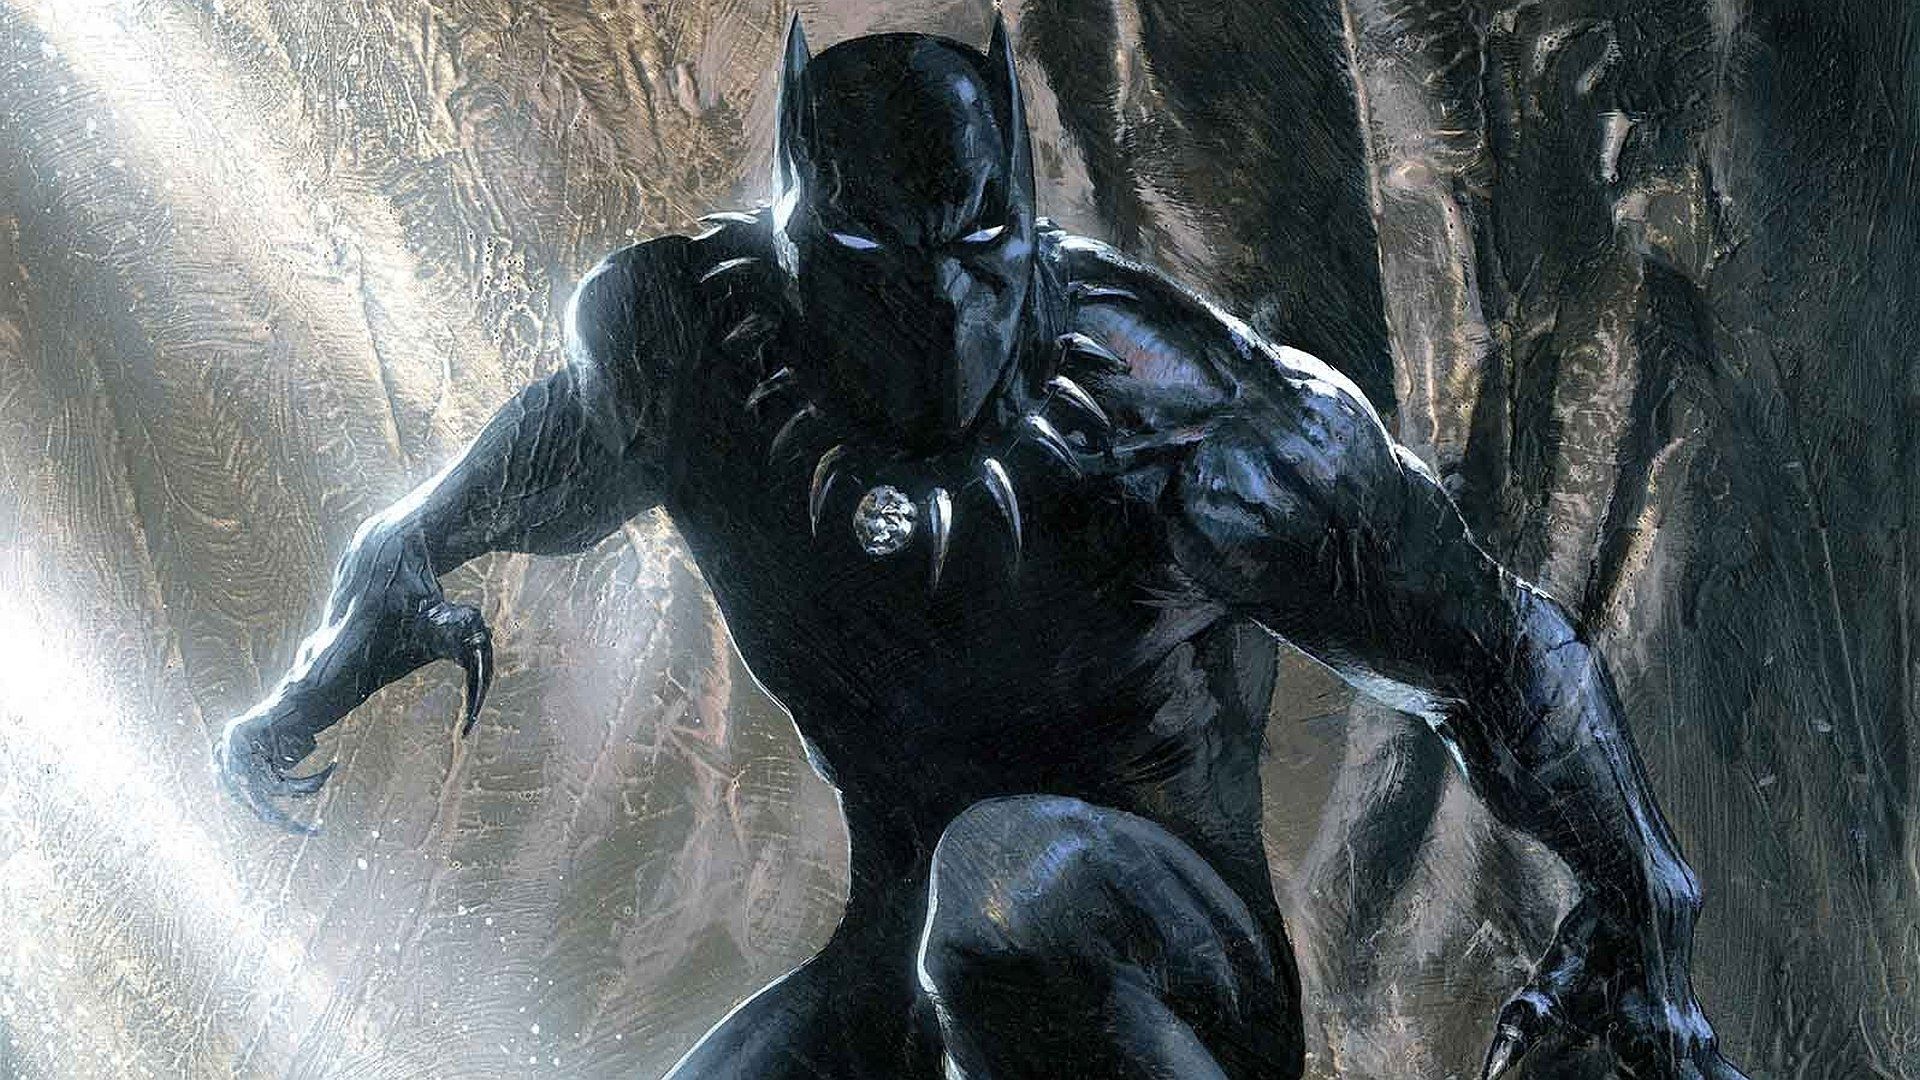 Black Panther Superhero Wallpaper Free Black Panther Superhero Background